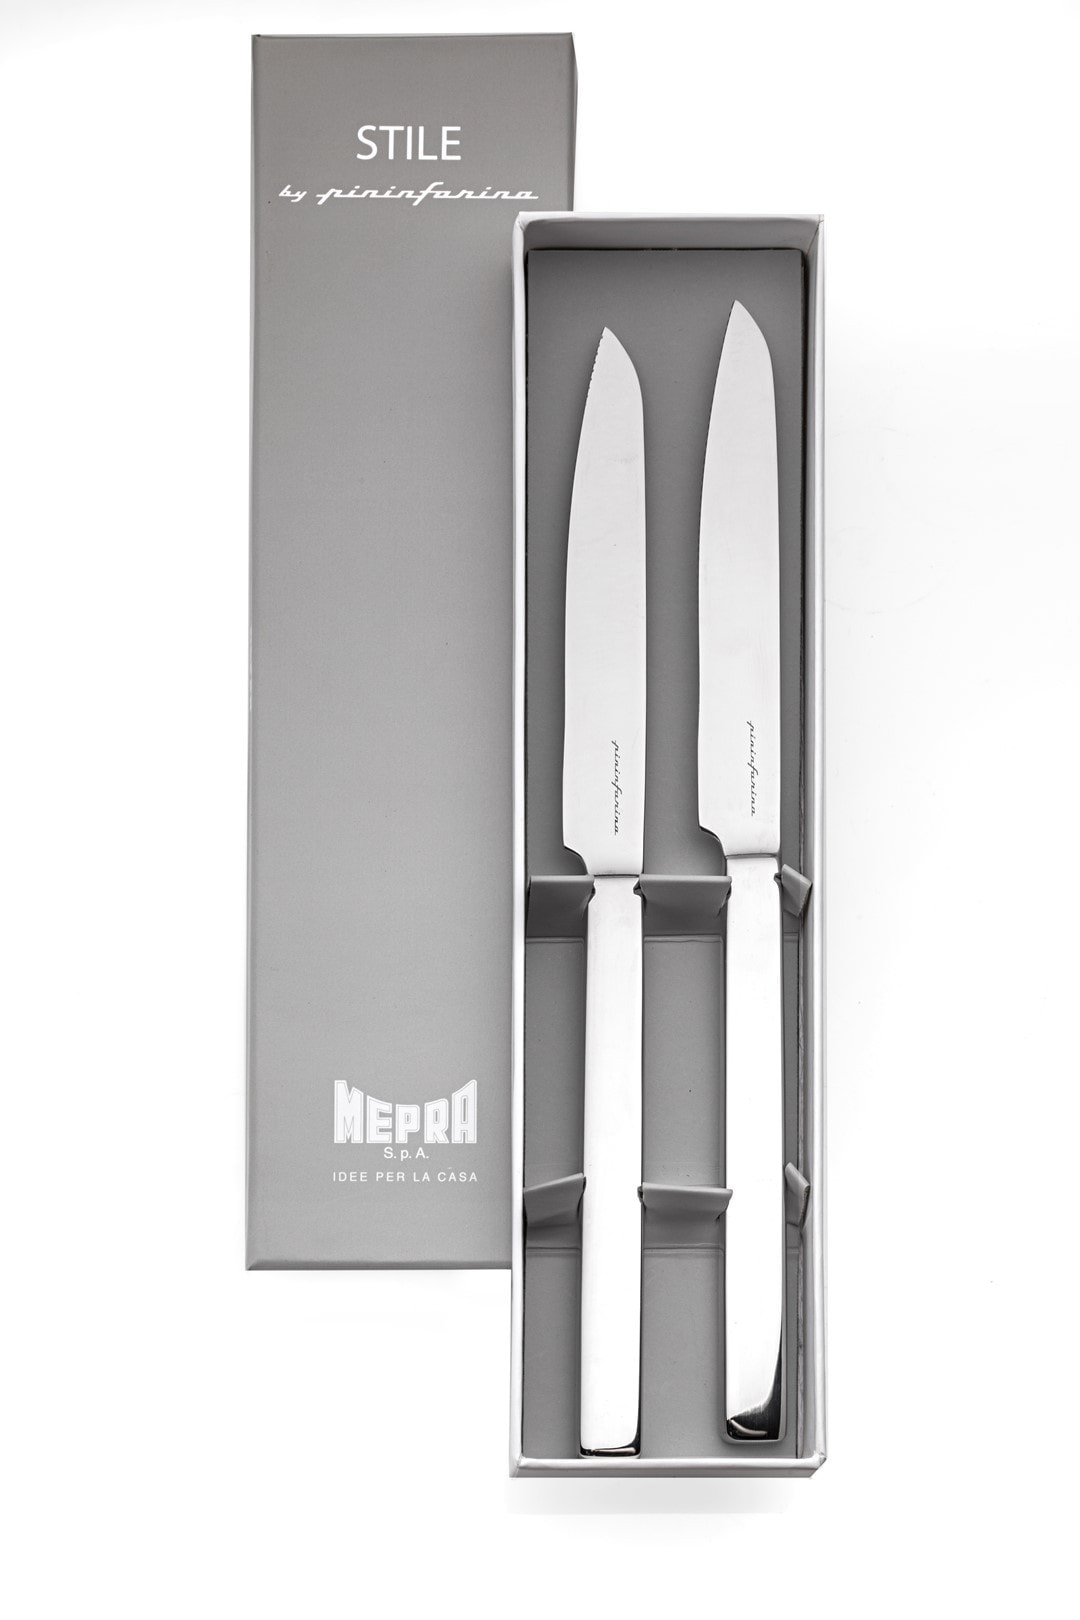 Zdjęcie MEPRA-Zestaw noży do steków 2el. Gift, Stile